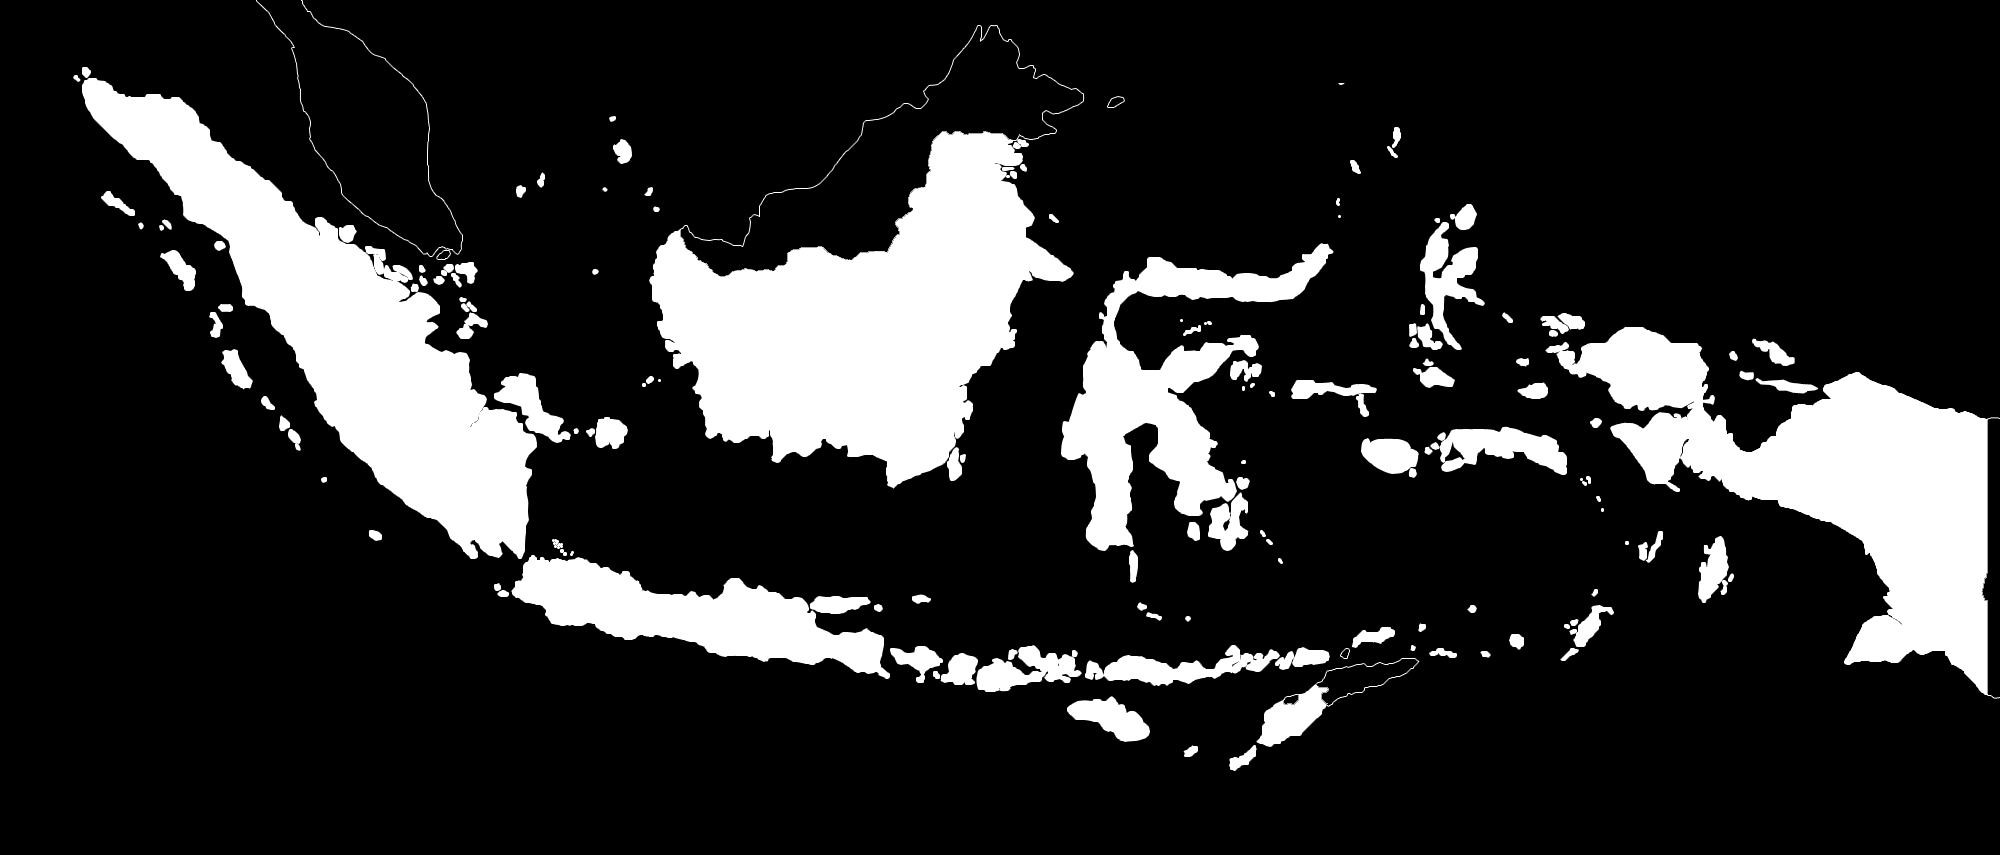 Aceh PERSENTASE KOTA YANG MENDAPATKAN NILAI PENGELOLAAN TPA DALAM SKALA BAIK PADA PROGRAM ADIPURA 2014-2015 4,35 Sumatera Utara 15,15 26,32 20 Sumatera Barat Bengkulu 13,33 Riau Lampung Banten Jumlah